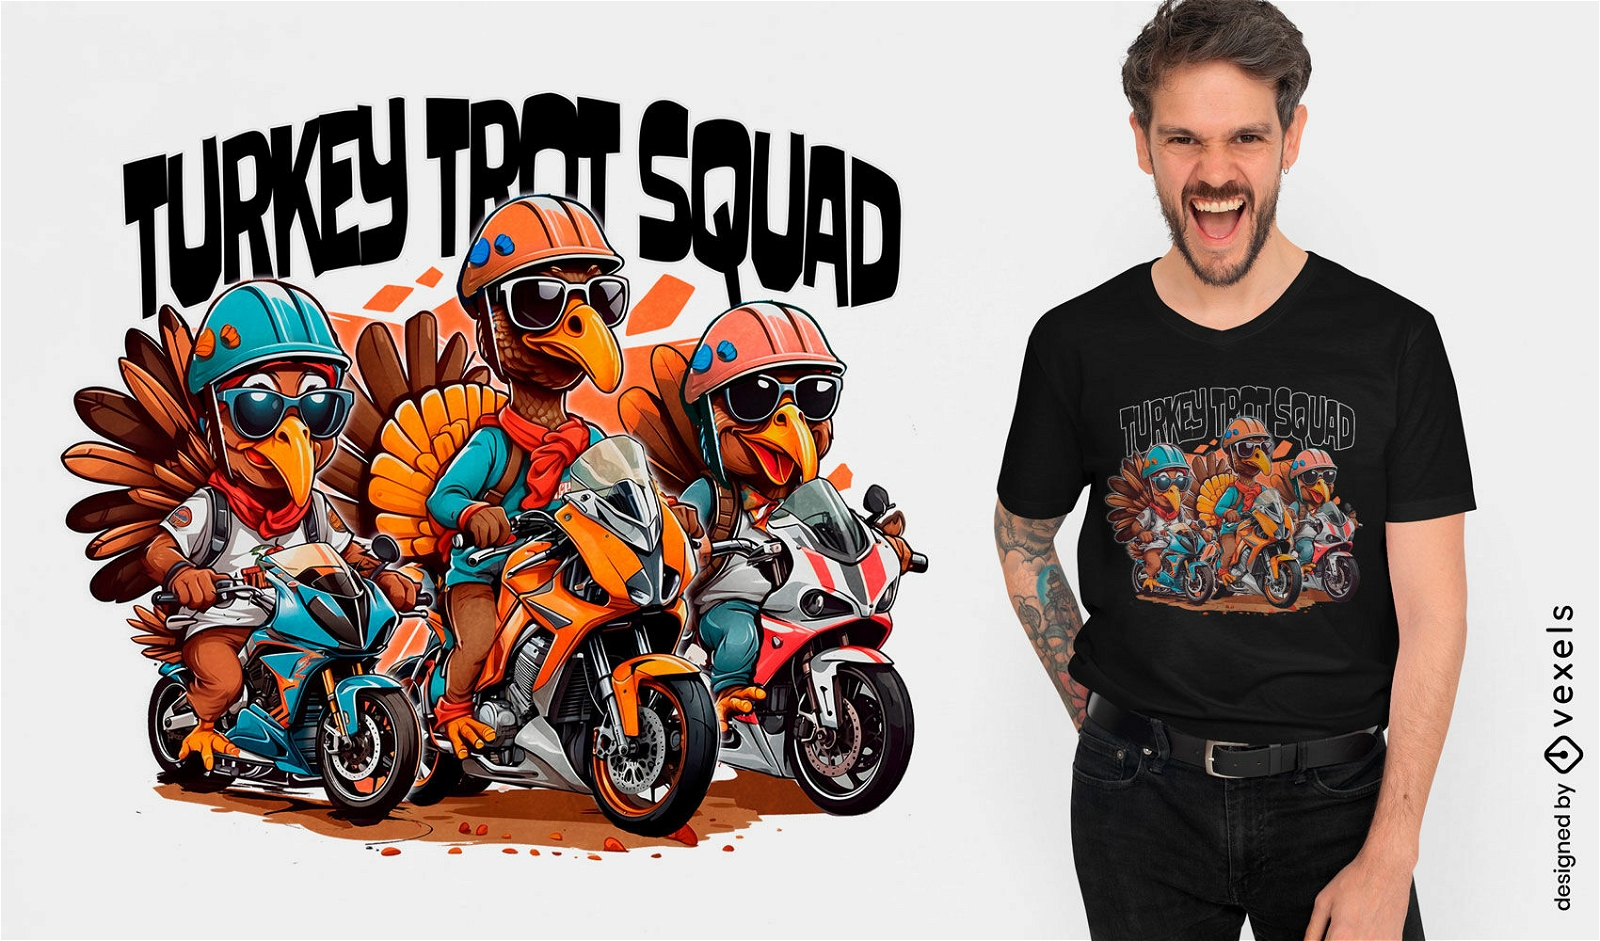 Diseño de camiseta de moto Turkey Trot Squad.